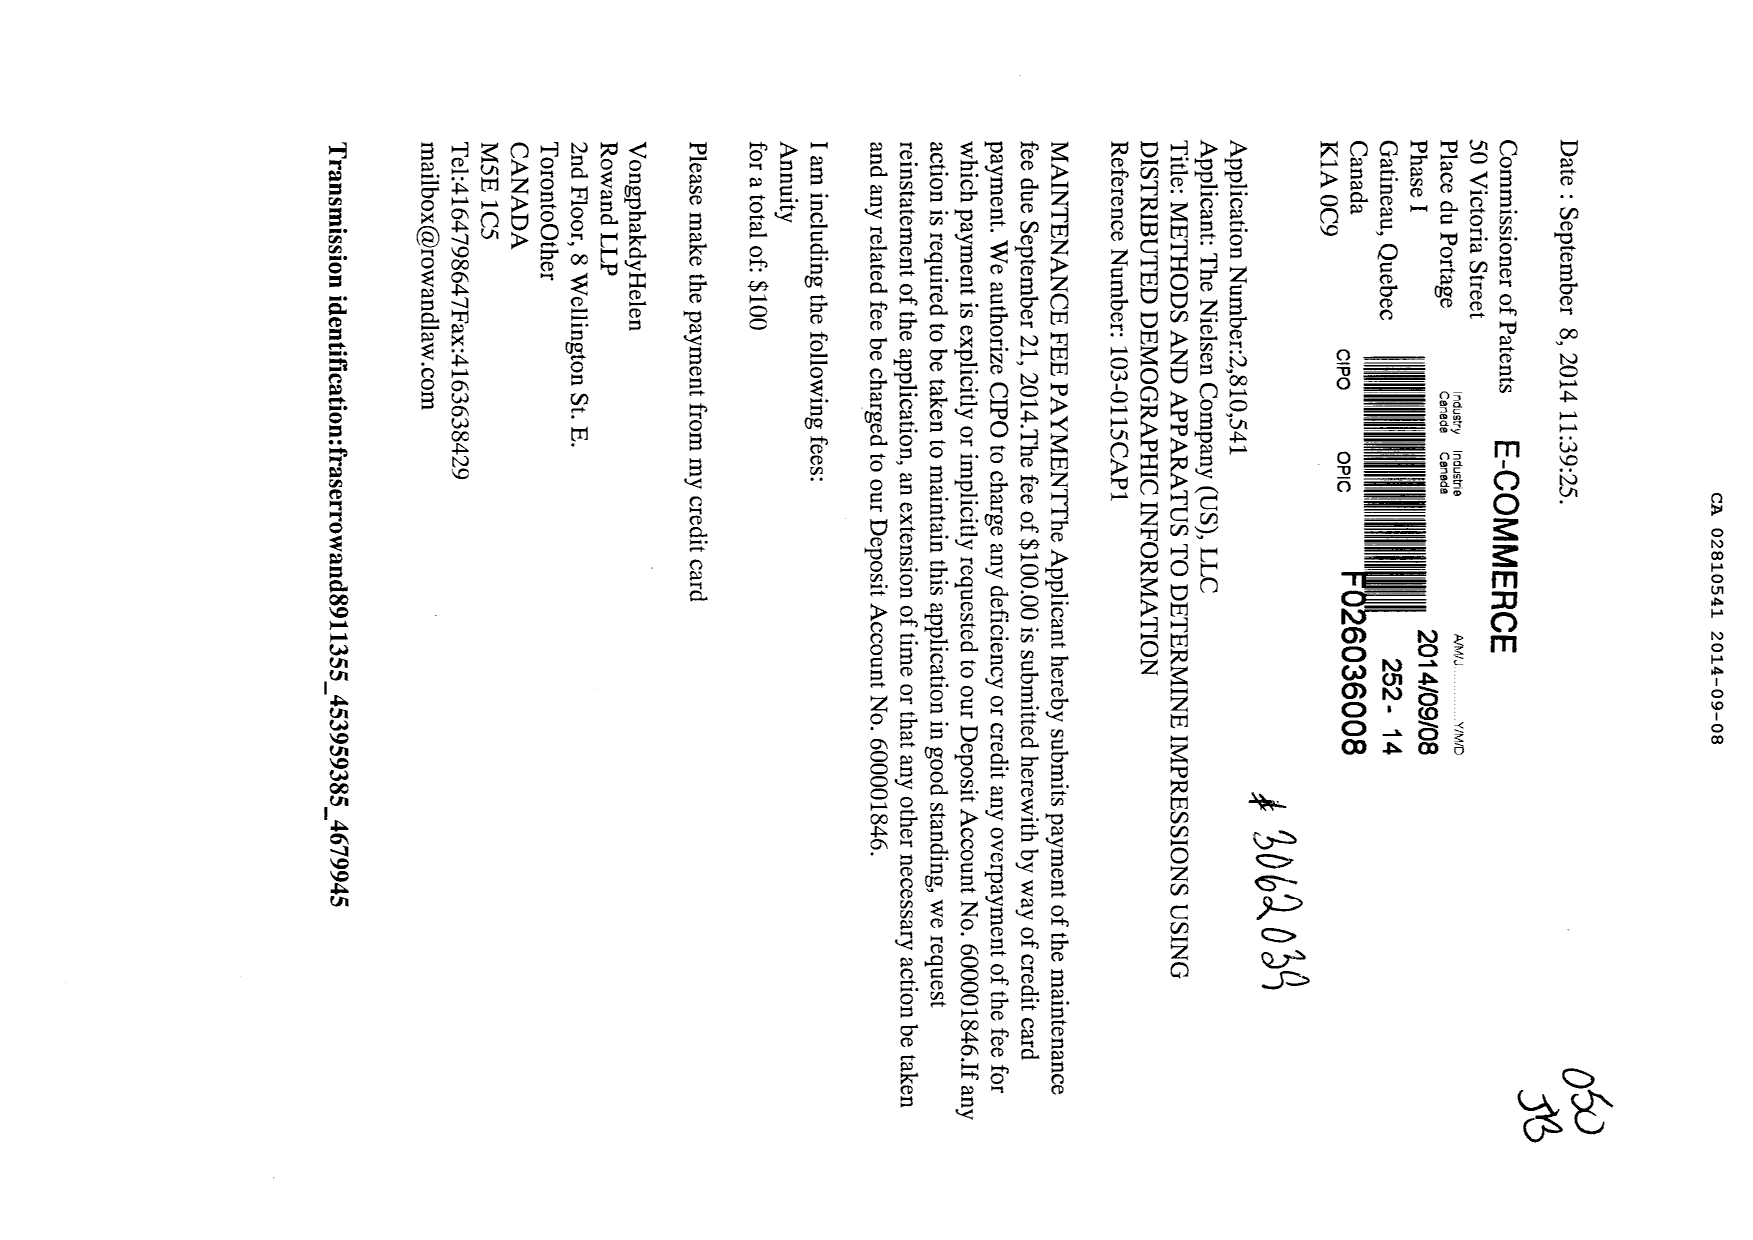 Document de brevet canadien 2810541. Taxes 20131208. Image 1 de 1